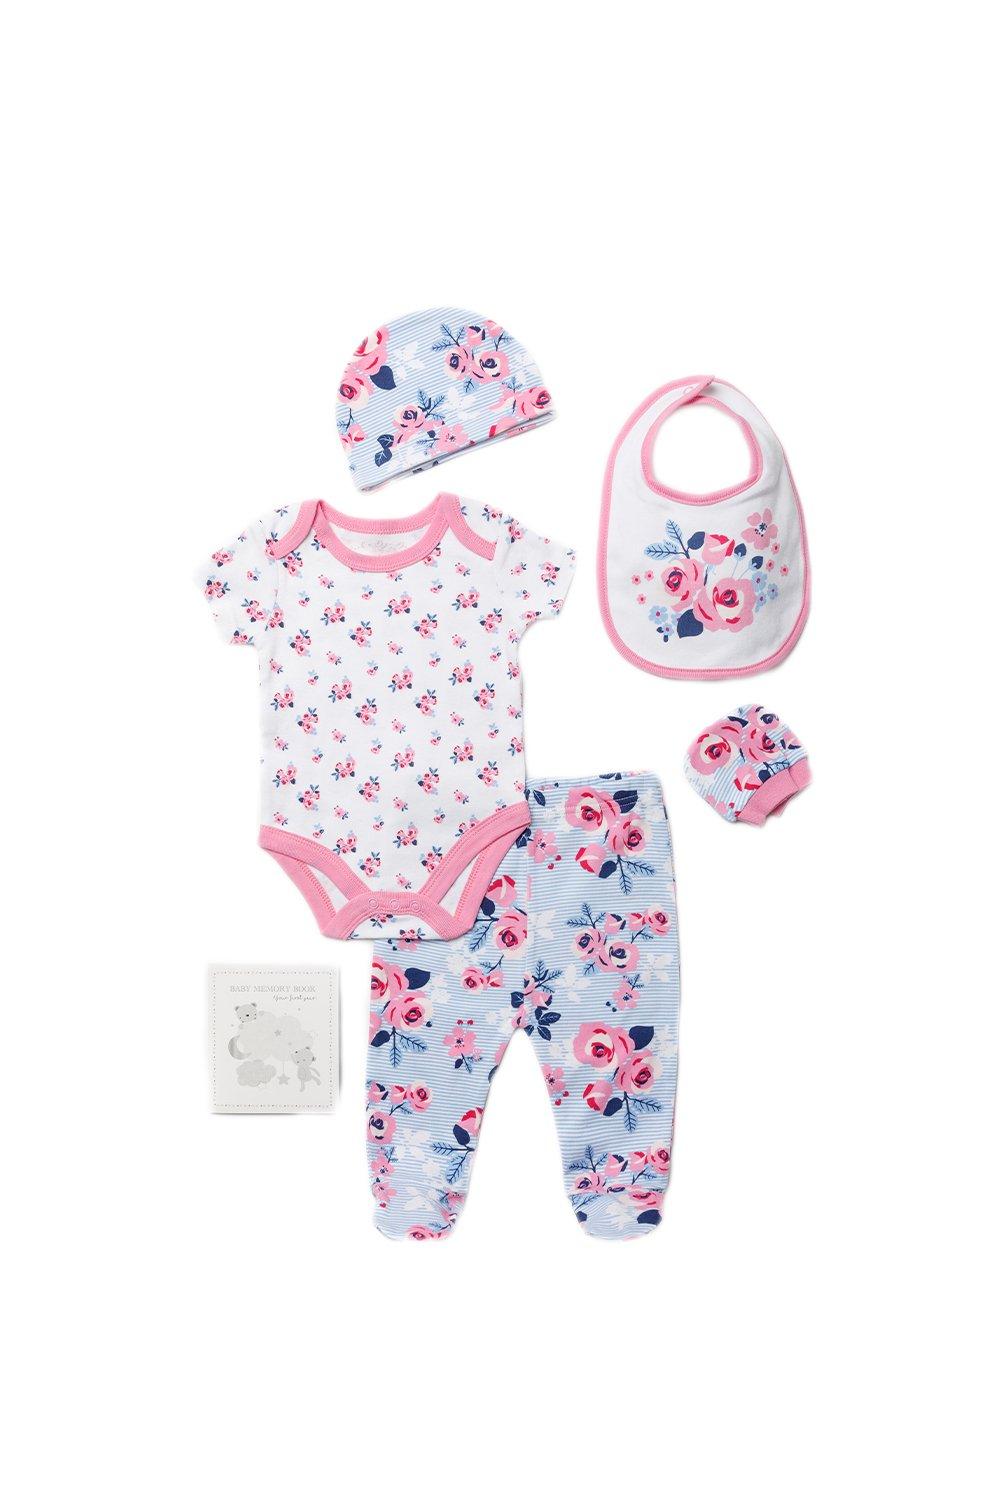 Хлопковый подарочный набор из 6 предметов с цветочным принтом для ребенка Rock a Bye Baby, розовый